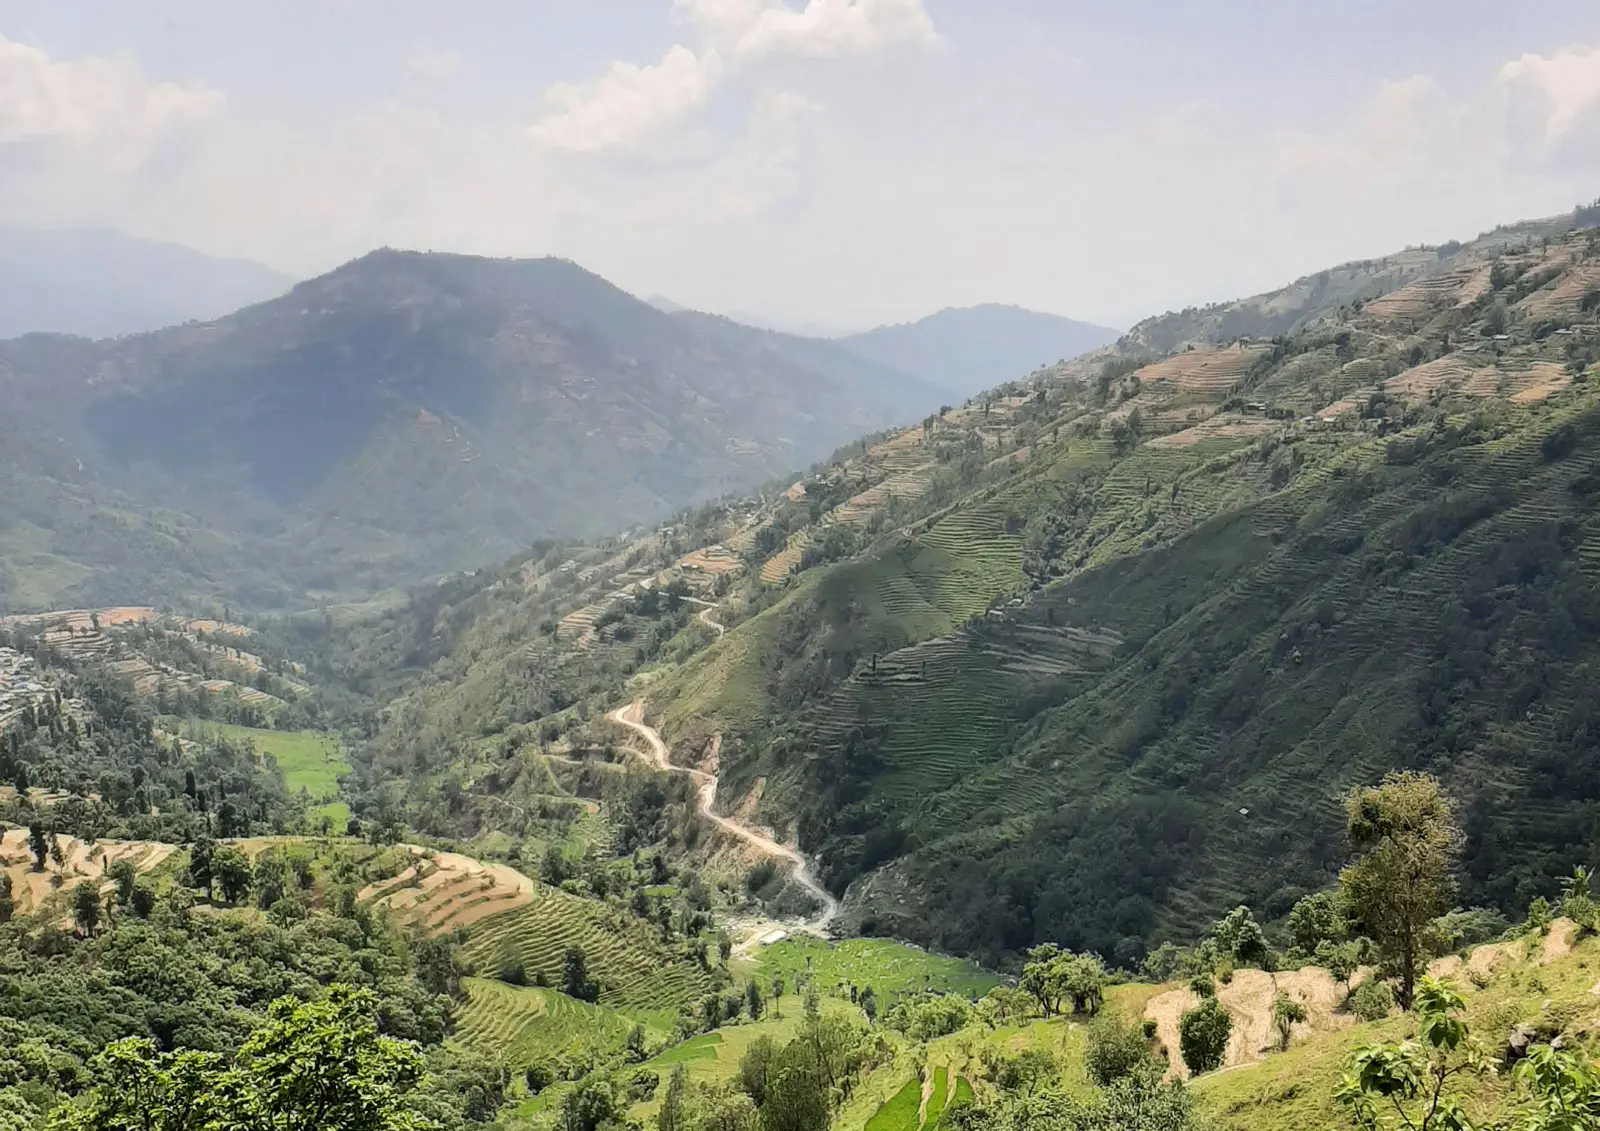 A road winds across a mountainside in Nepal.